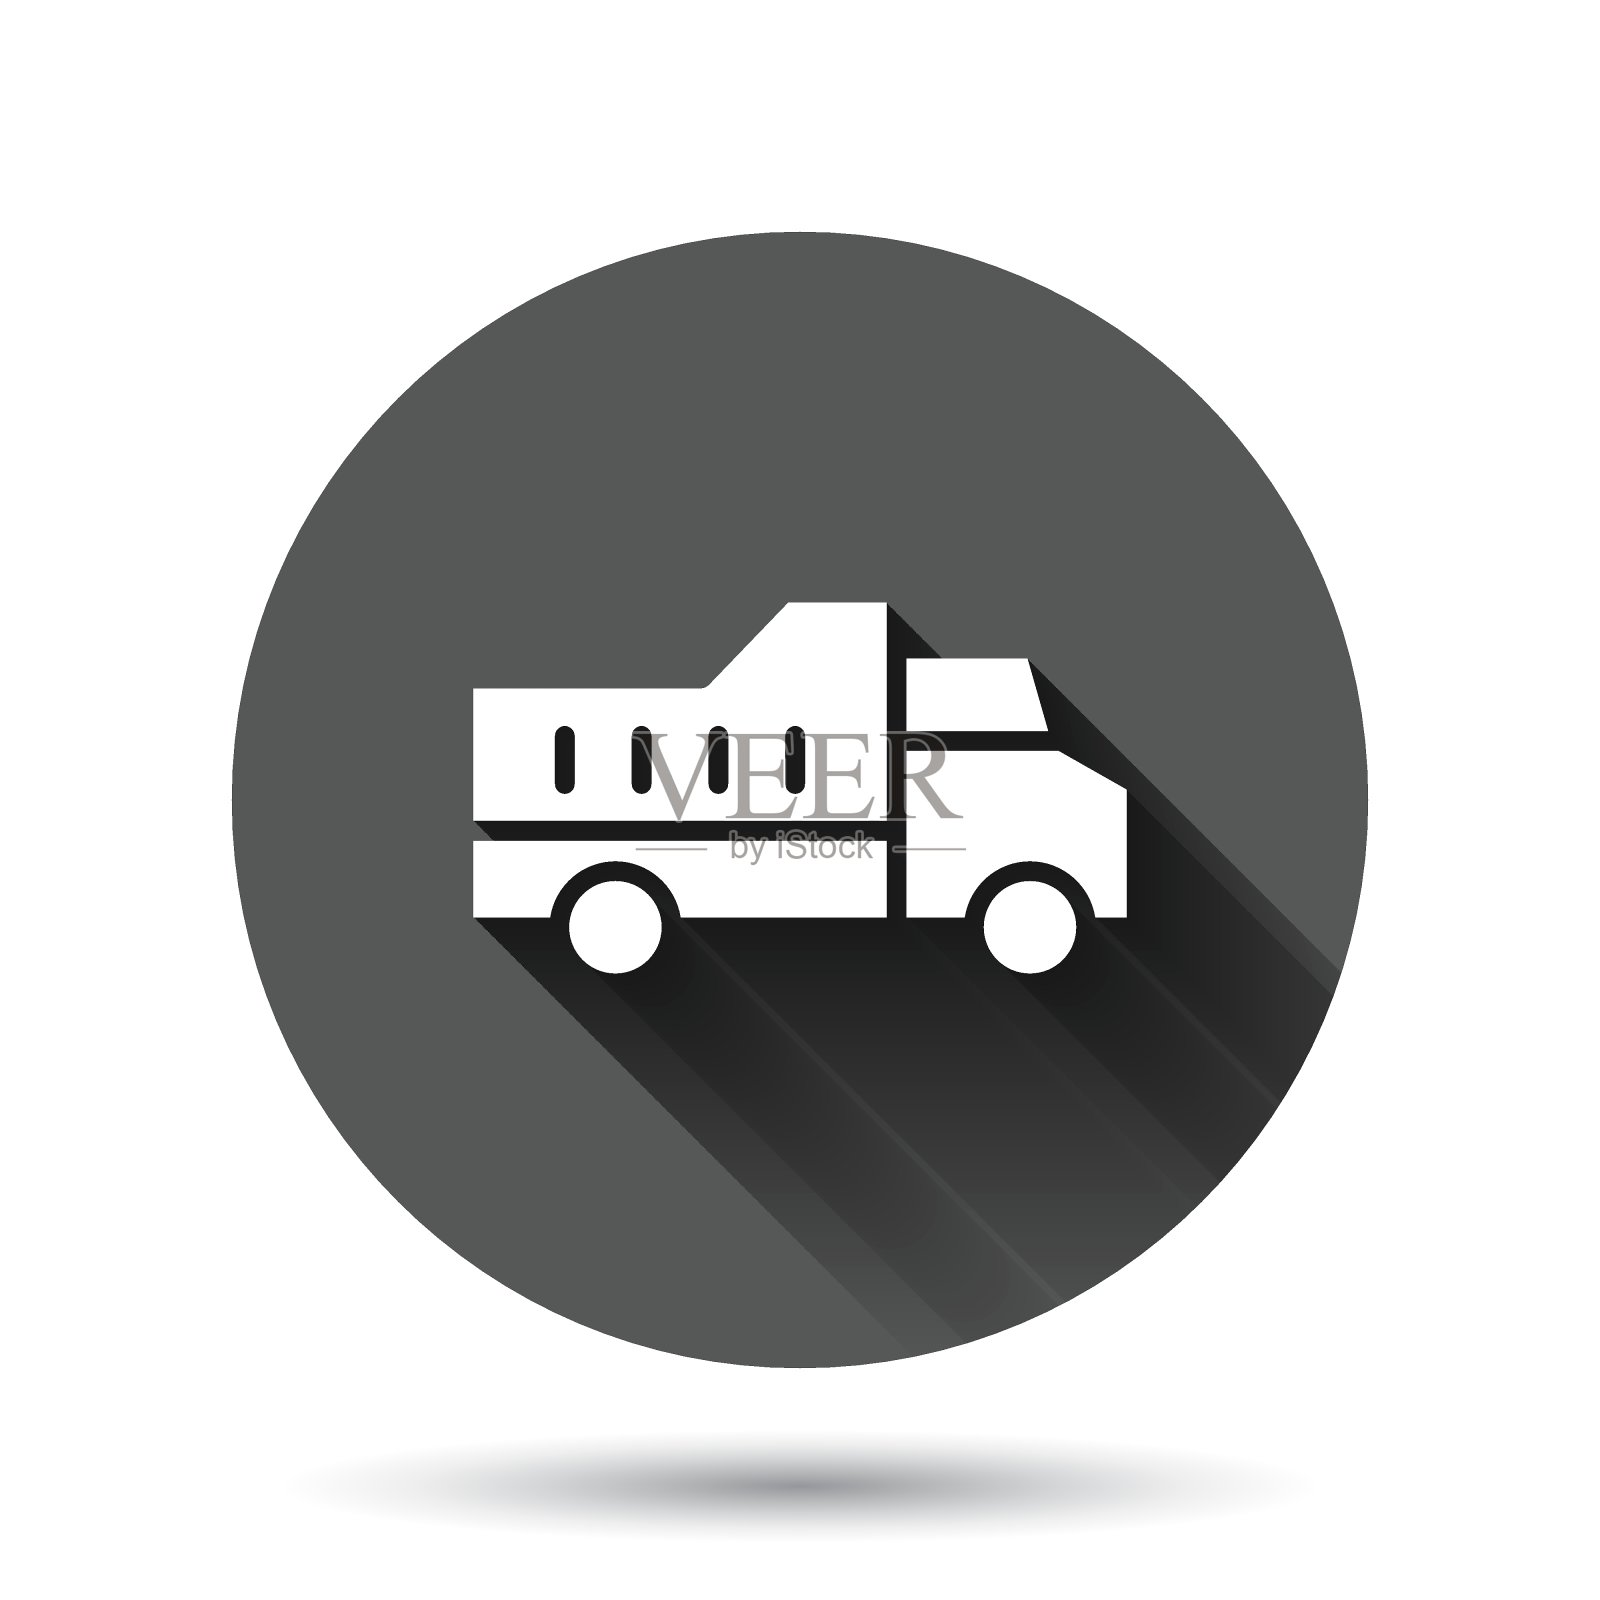 货车图标在平坦的风格。矢量图上的黑色圆形背景和长阴影效果。钮扣货车圈经营理念。插画图片素材